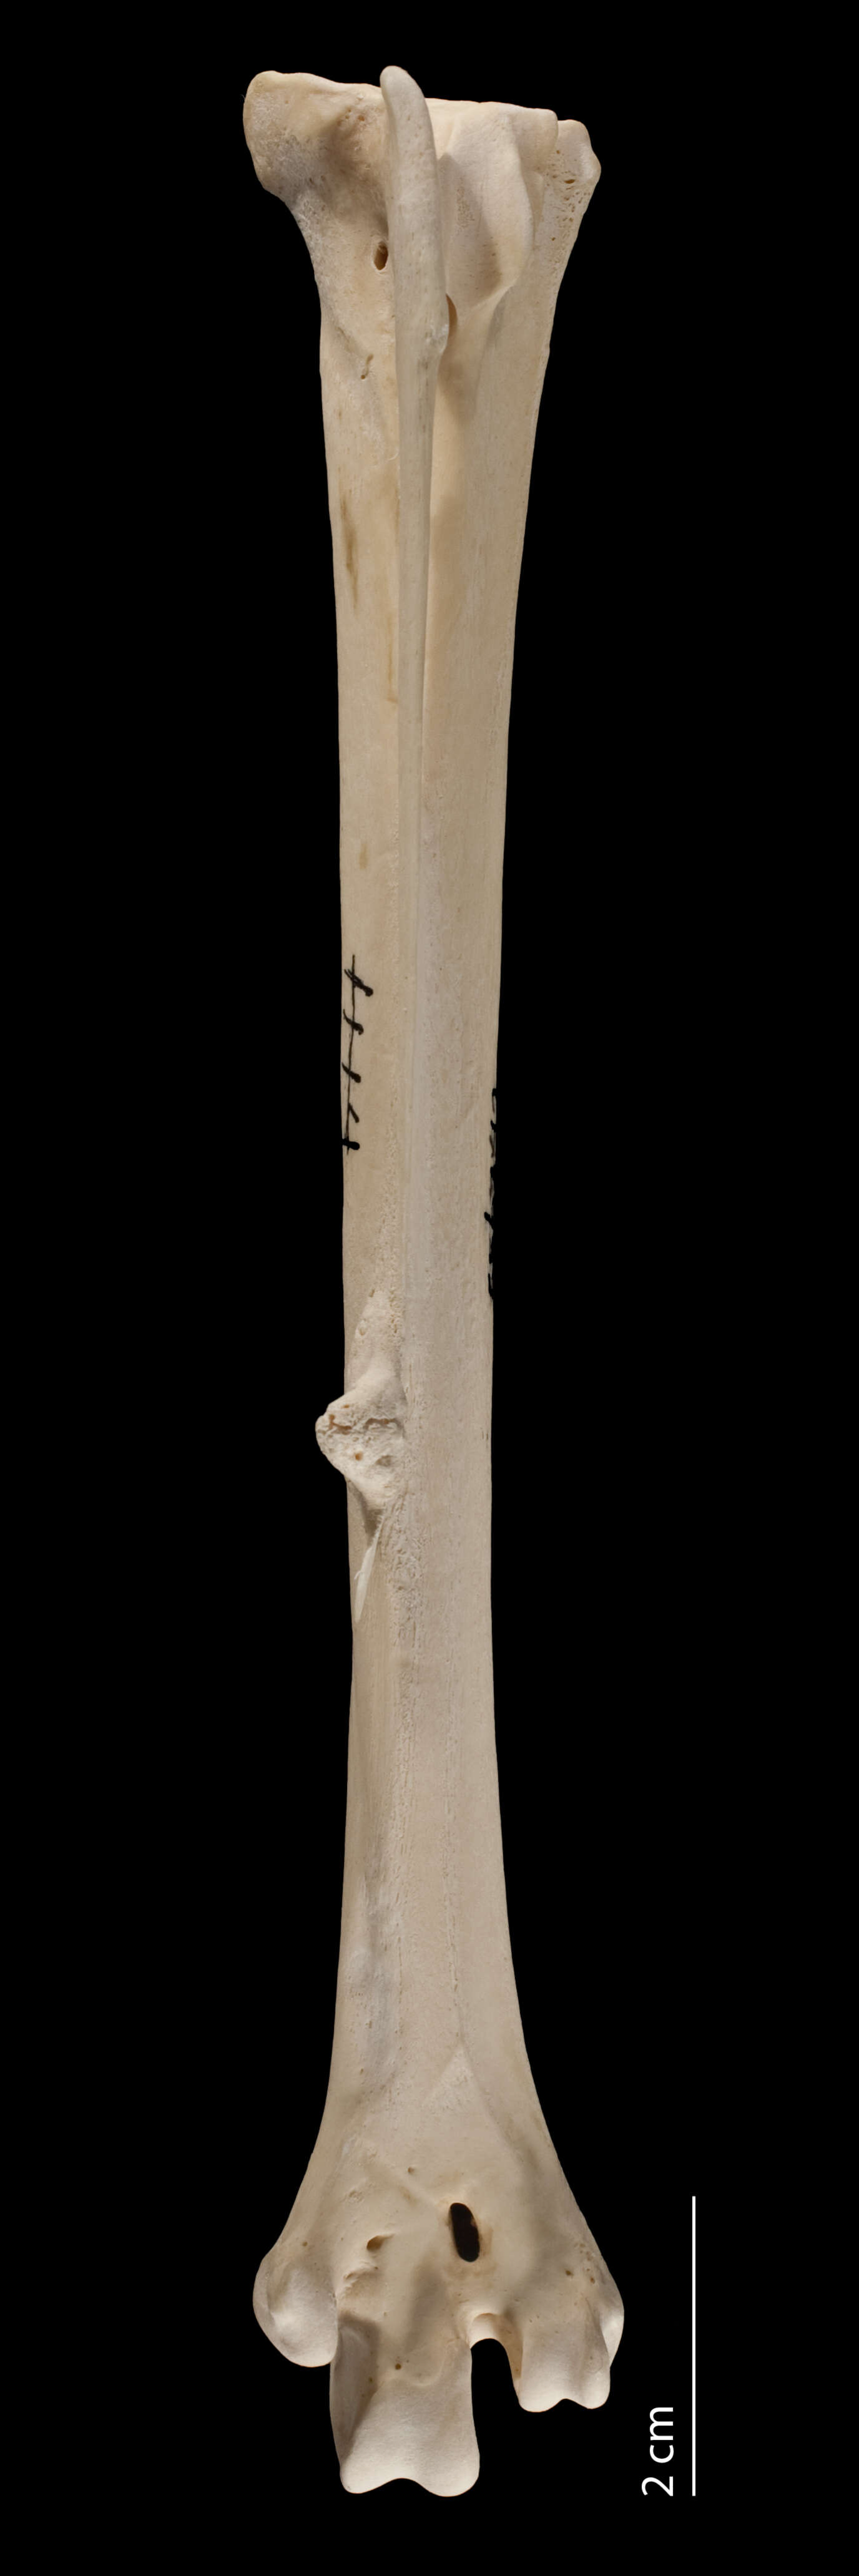 Image of Meleagris gallopavo silvestris Vieillot 1817